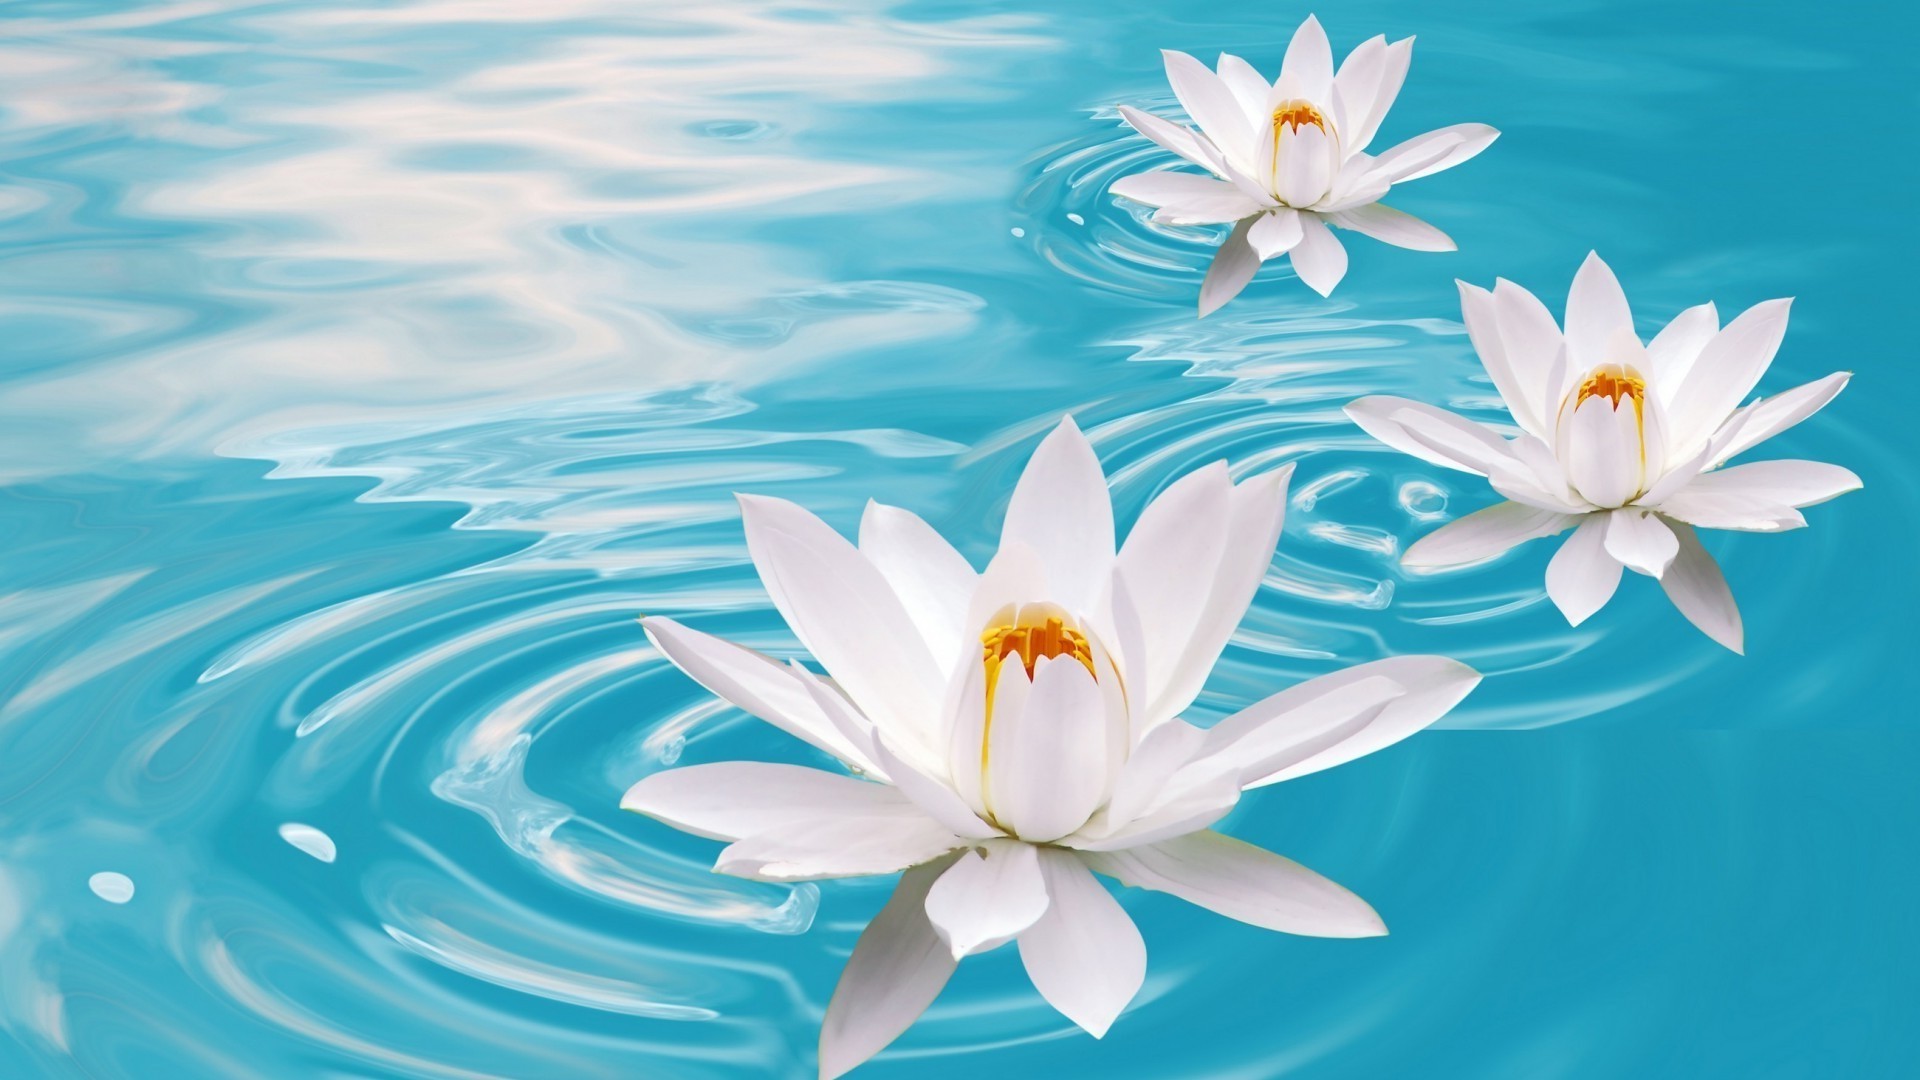 лилии цветок природа лотос лето тропический лист флора дзен бассейн красивые плавание медитация экзотические лепесток воды цветочные водный блюминг